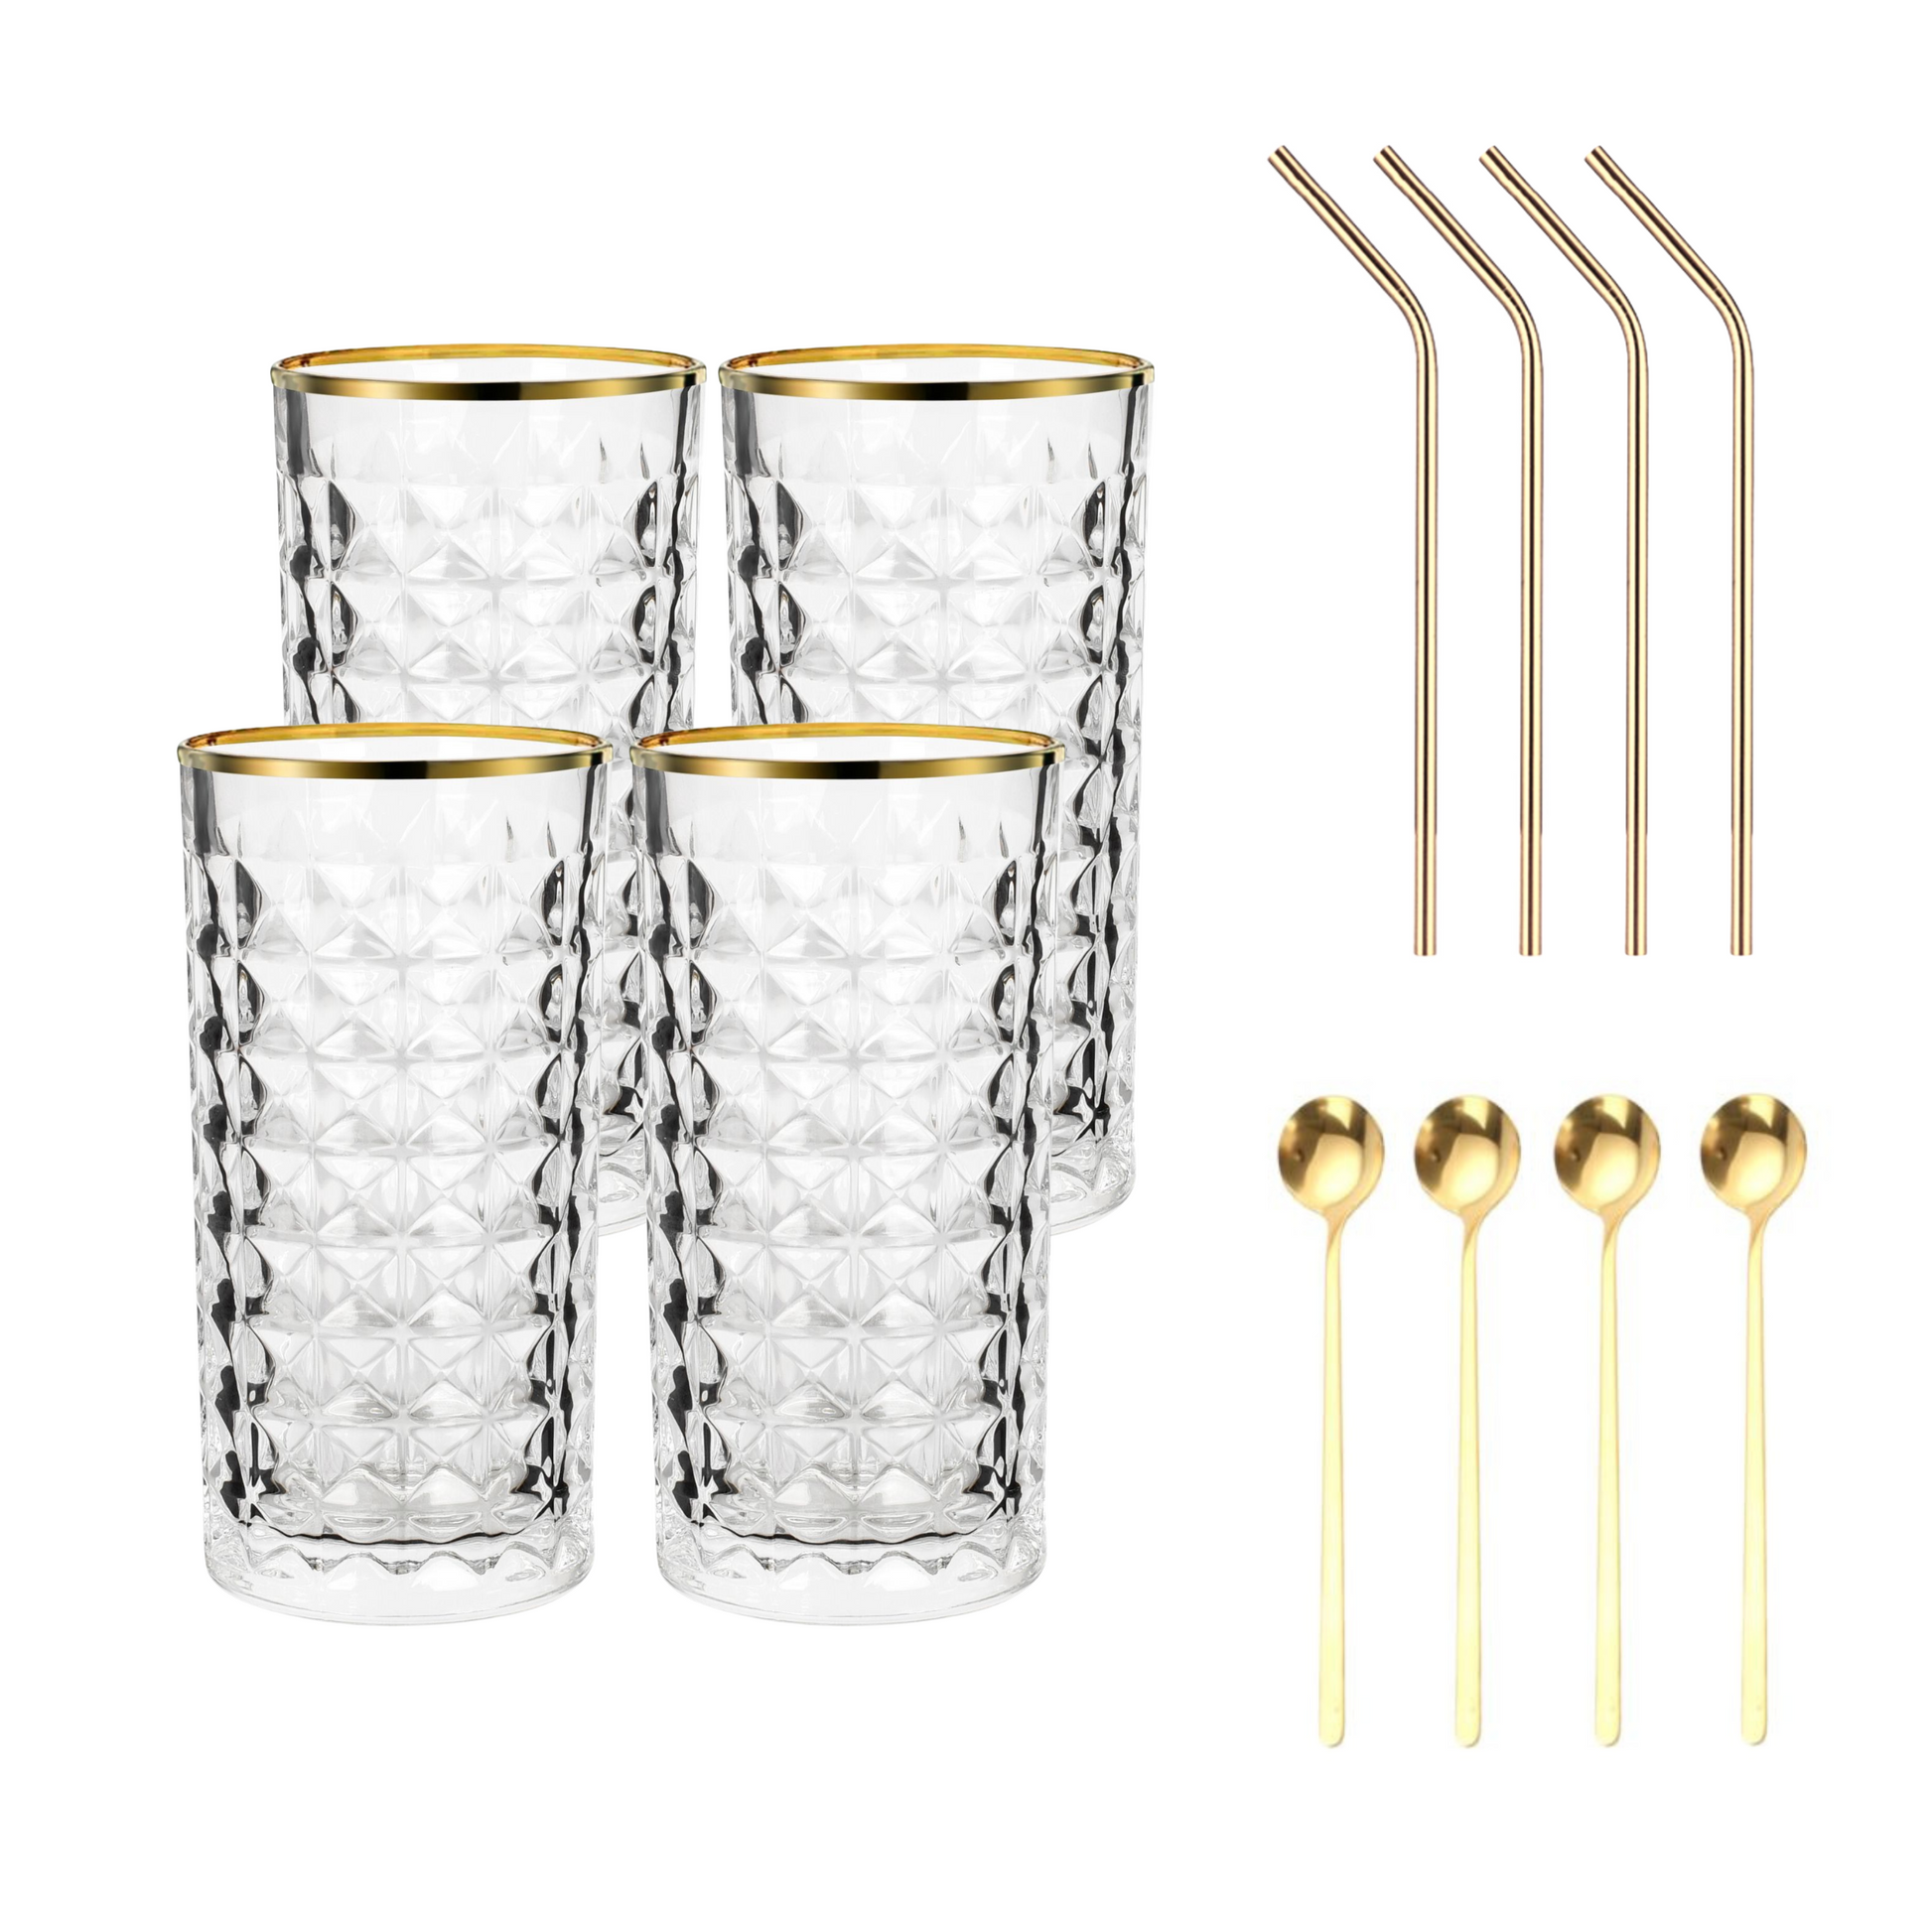 Set Luxus Kristall Latte Macchiato Gläser mit Goldrand 330ml Trinkgläser 4er Set "Luxe" mit goldenen Latte Macchiato Löffeln und goldenen Strohhalmen aus Edelstahl